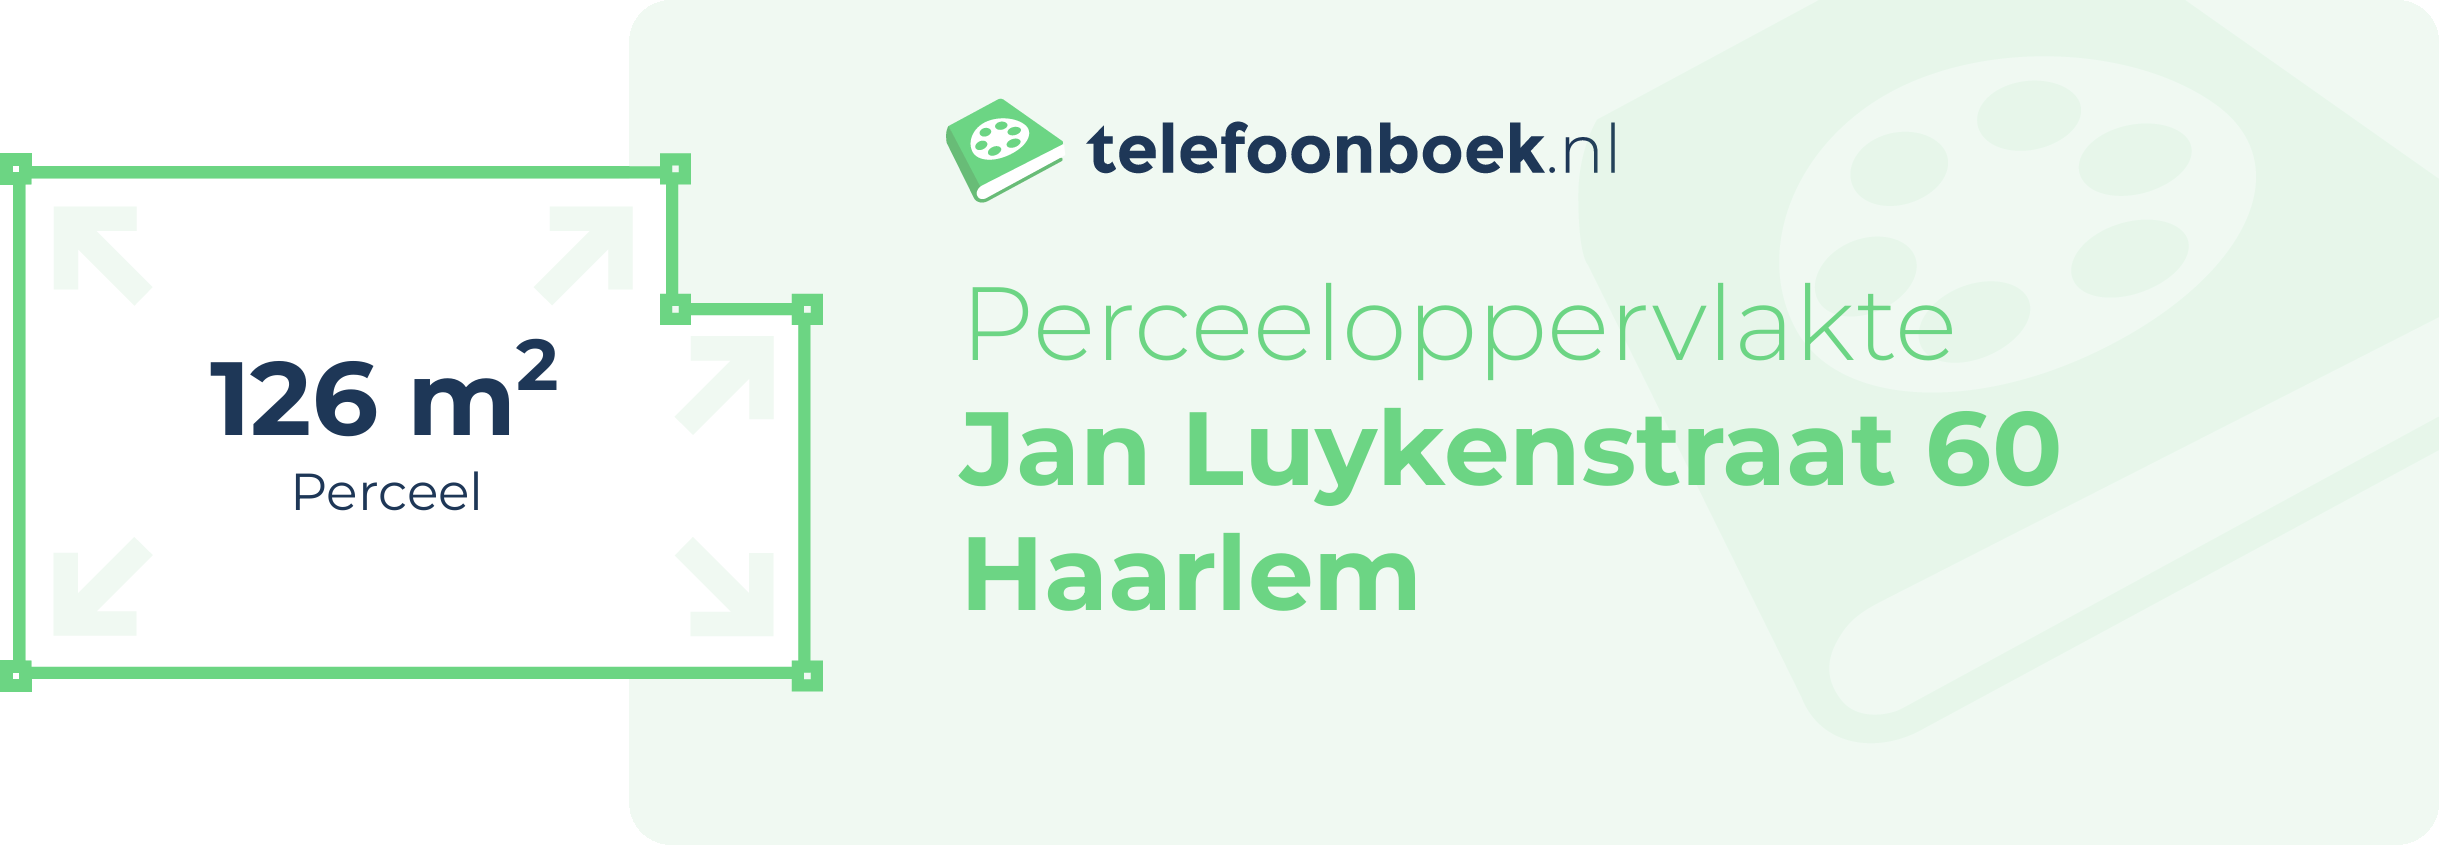 Perceeloppervlakte Jan Luykenstraat 60 Haarlem